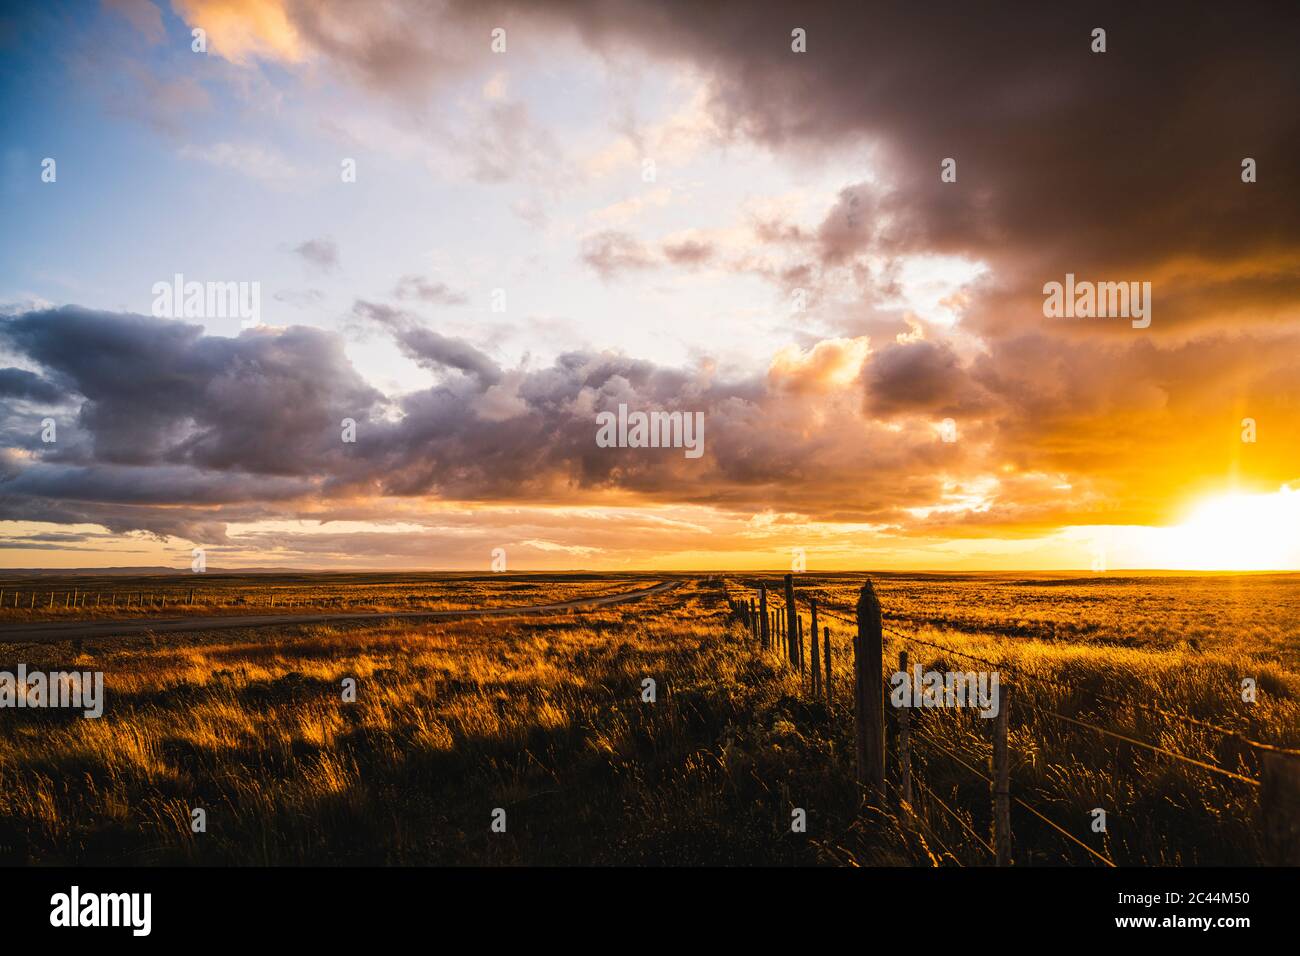 Cile, Fence si estende lungo vaste praterie al tramonto drammatico Foto Stock